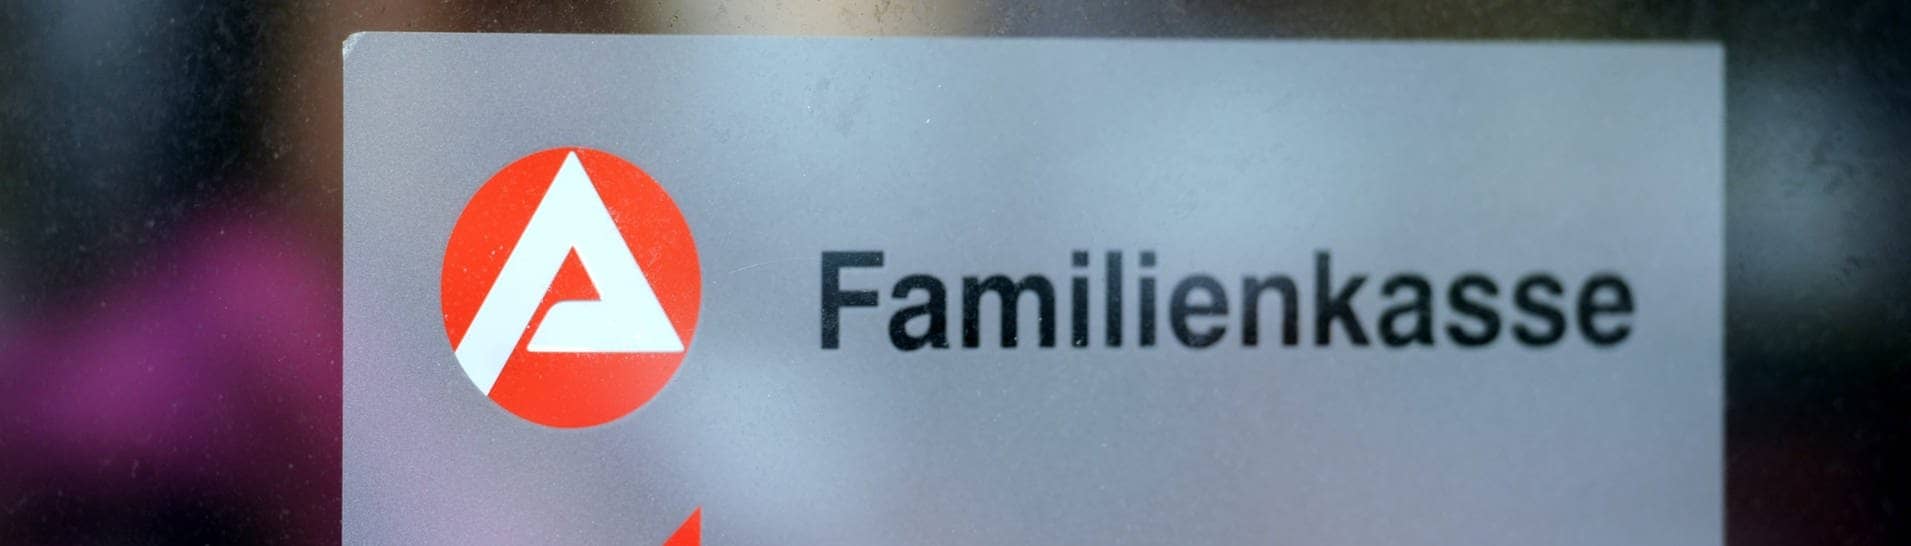 Ein Logo weist auf die Familienkasse in der Agentur für Arbeit hin.